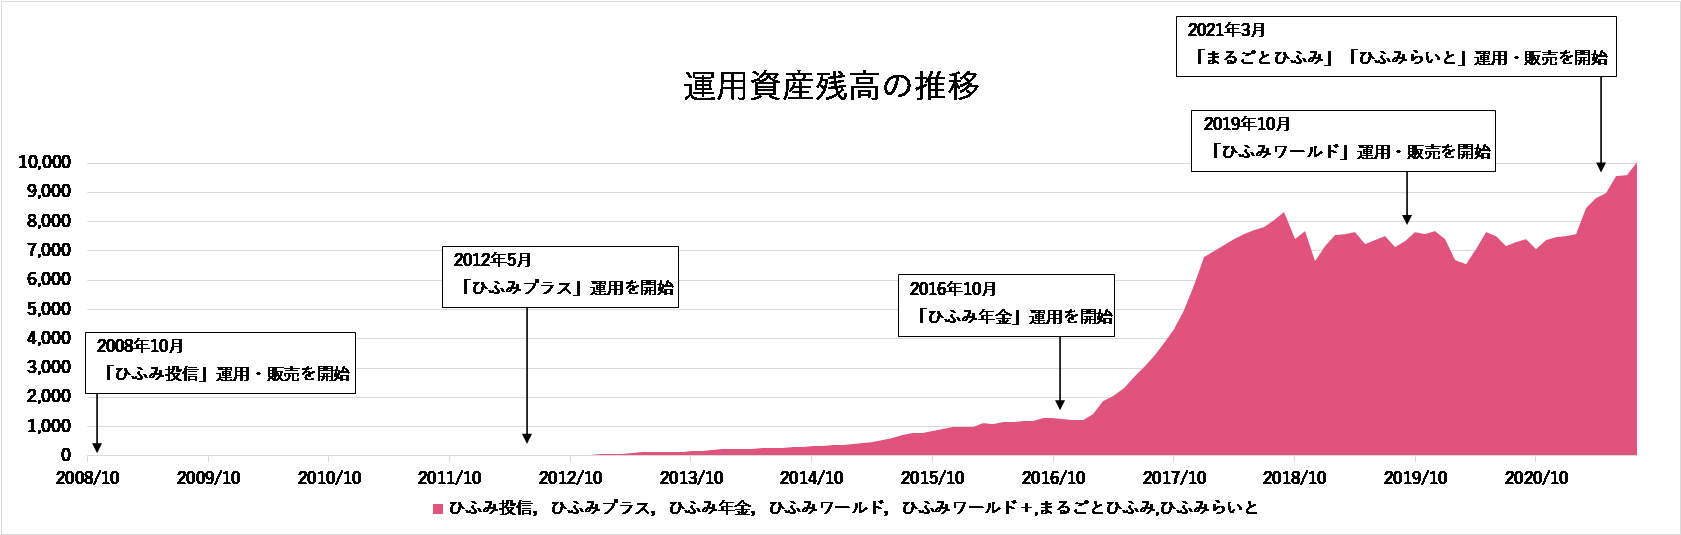 「ひふみ」シリーズ運用資産残高1兆円突破までの推移